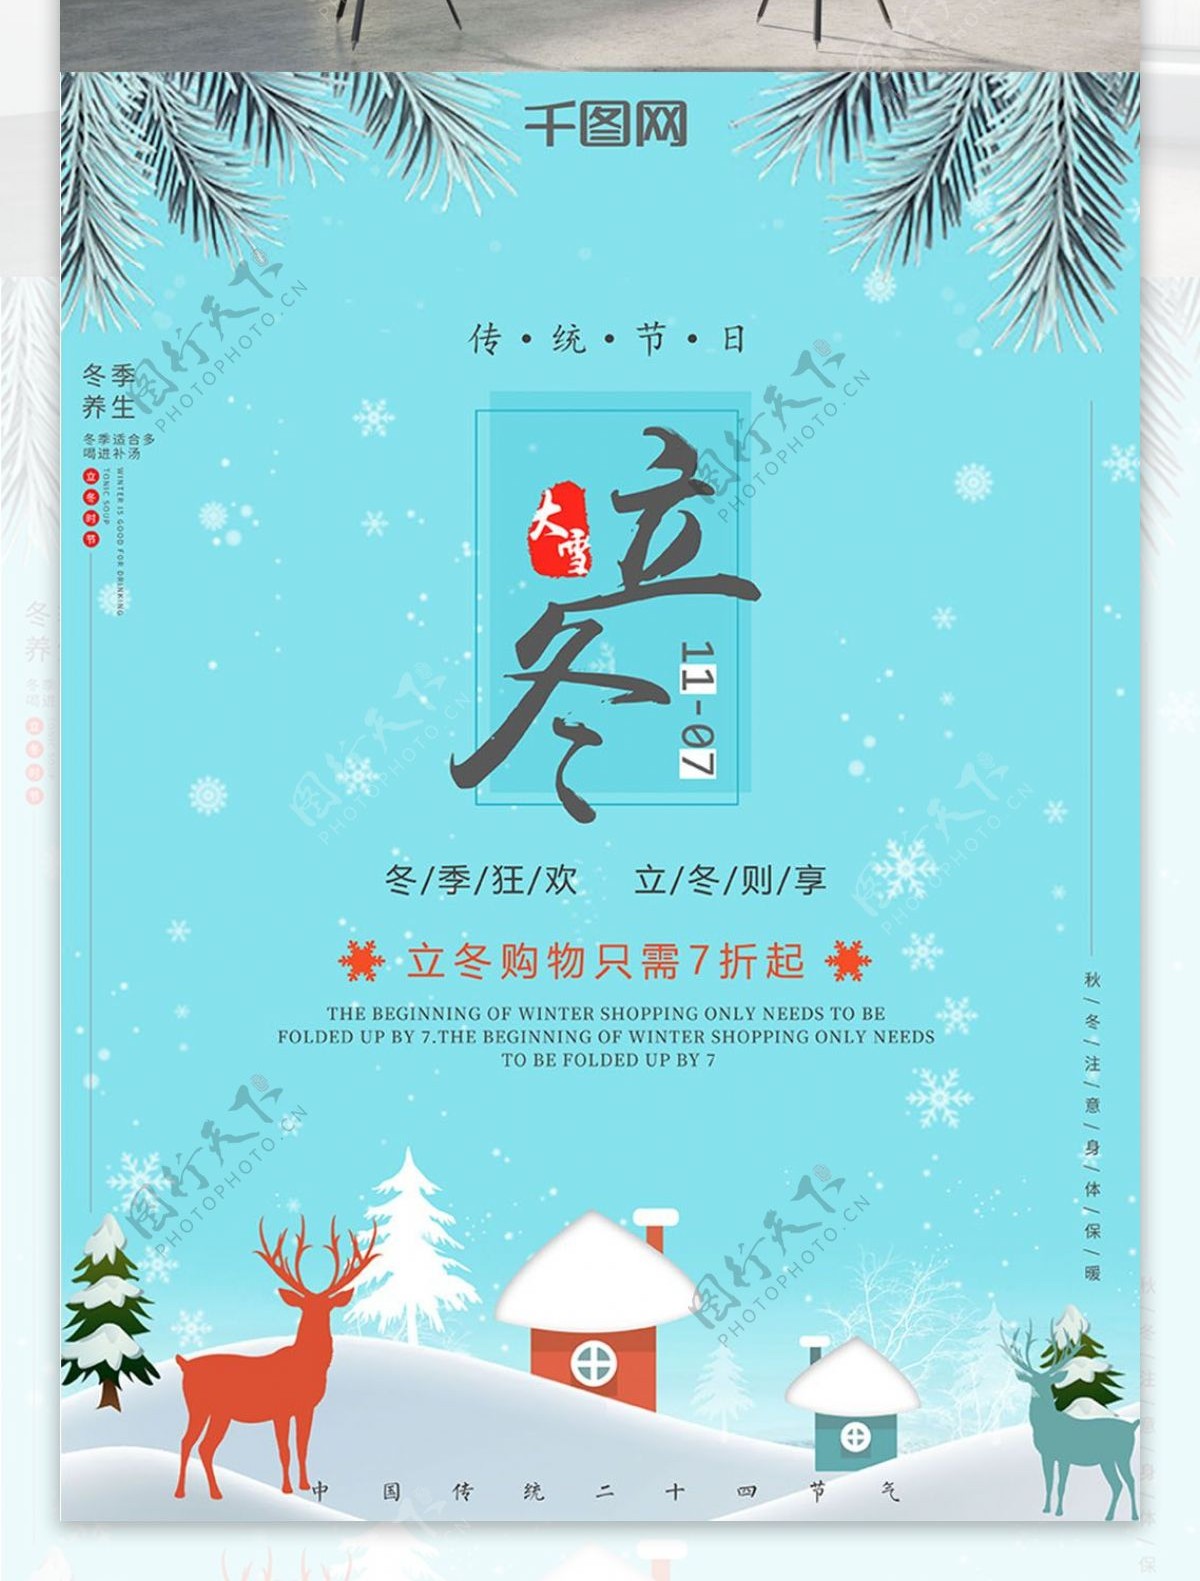 原创插画立冬传统节日促销冬季活动宣传海报